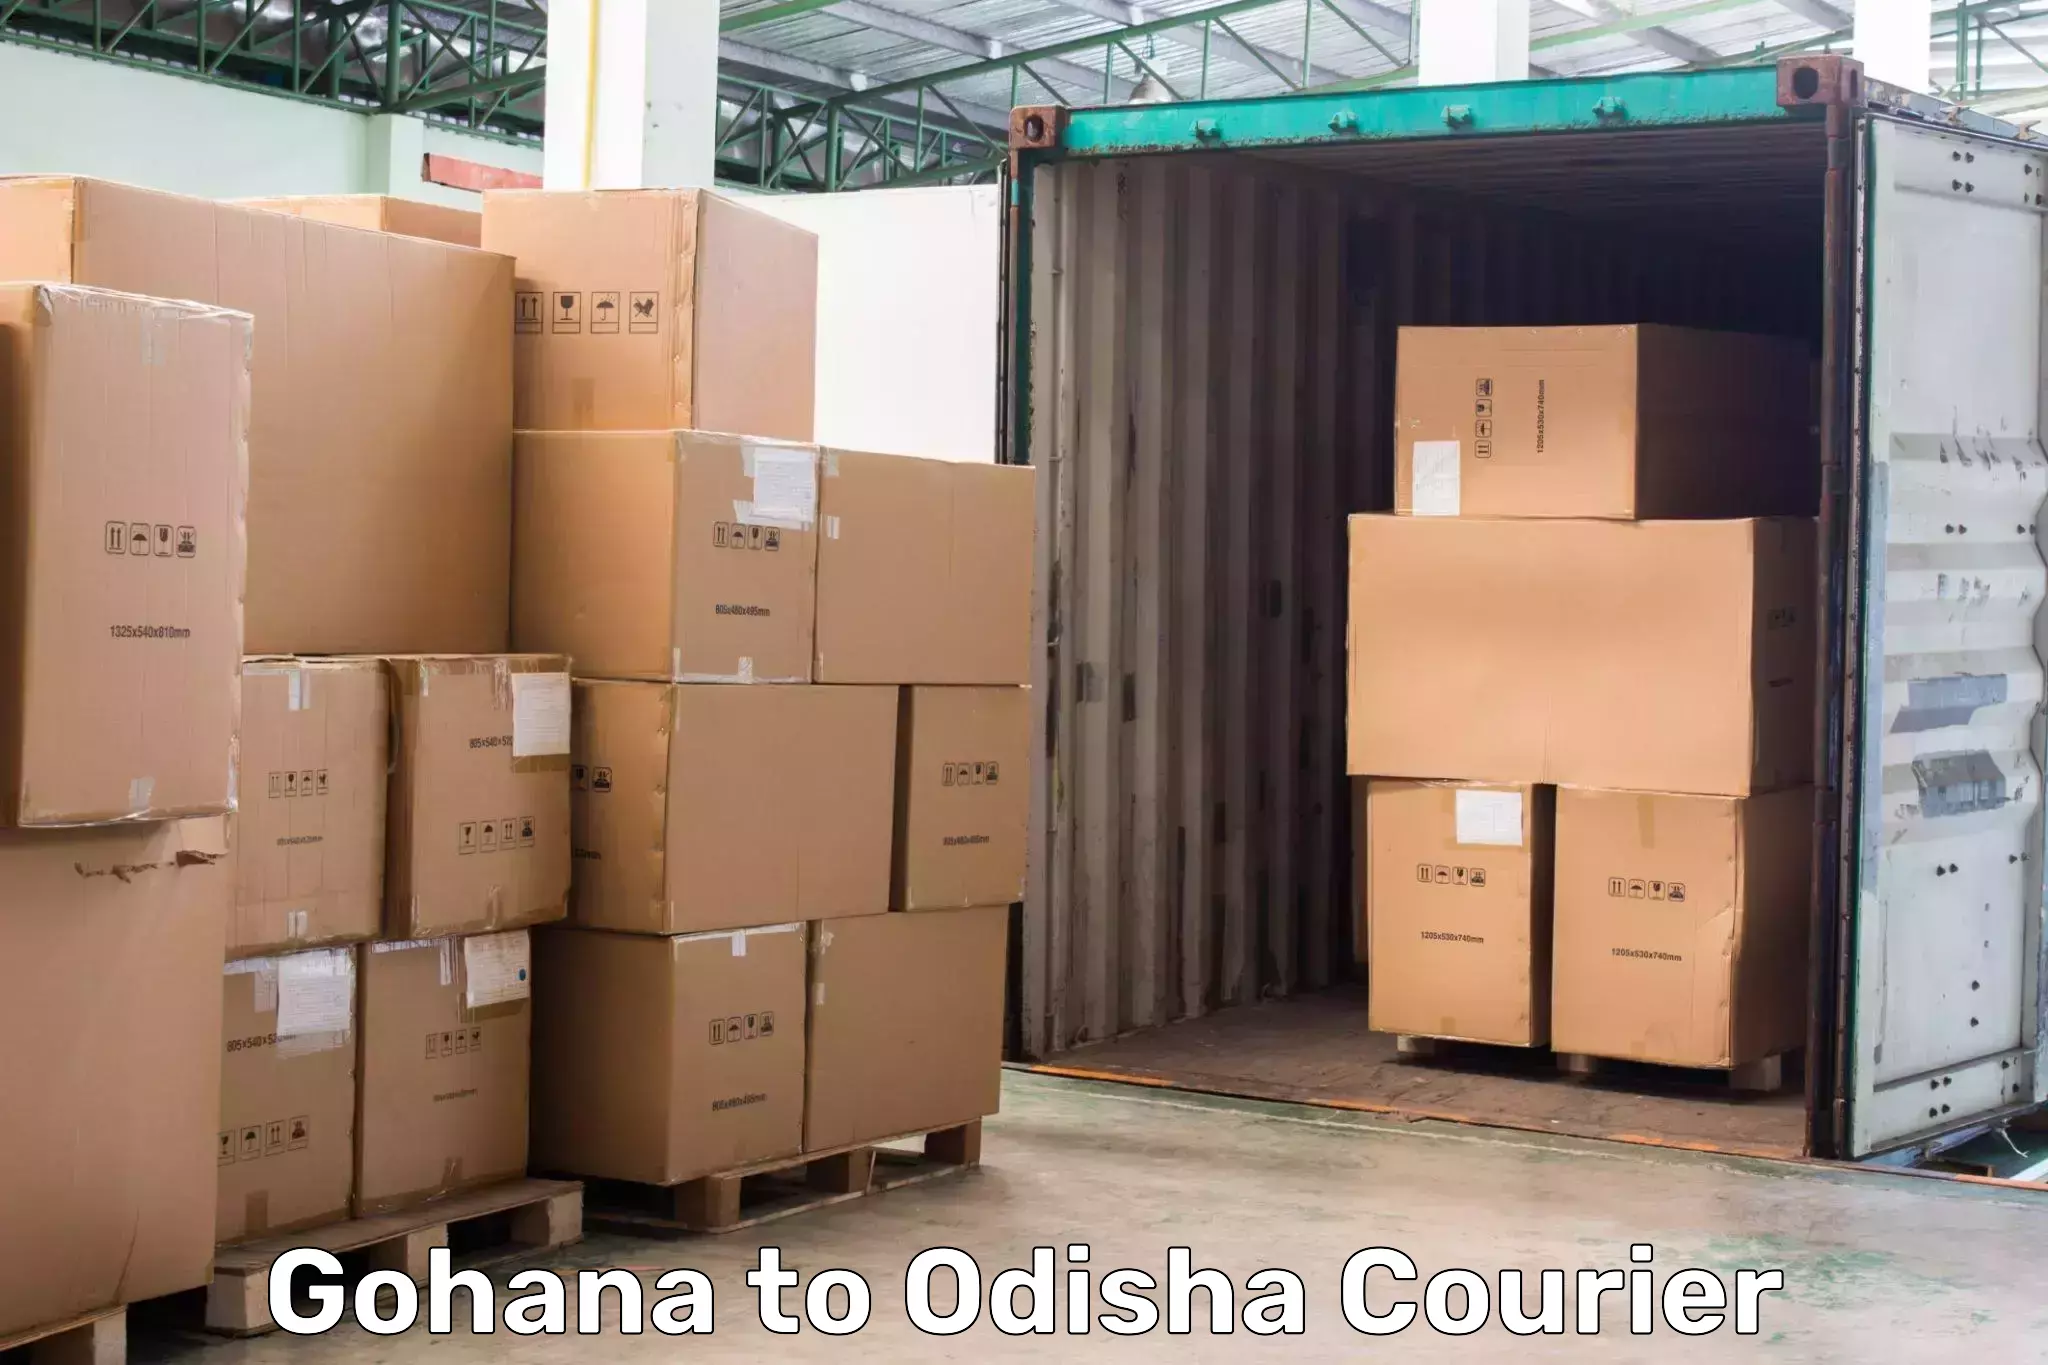 Express delivery capabilities Gohana to Kotapad